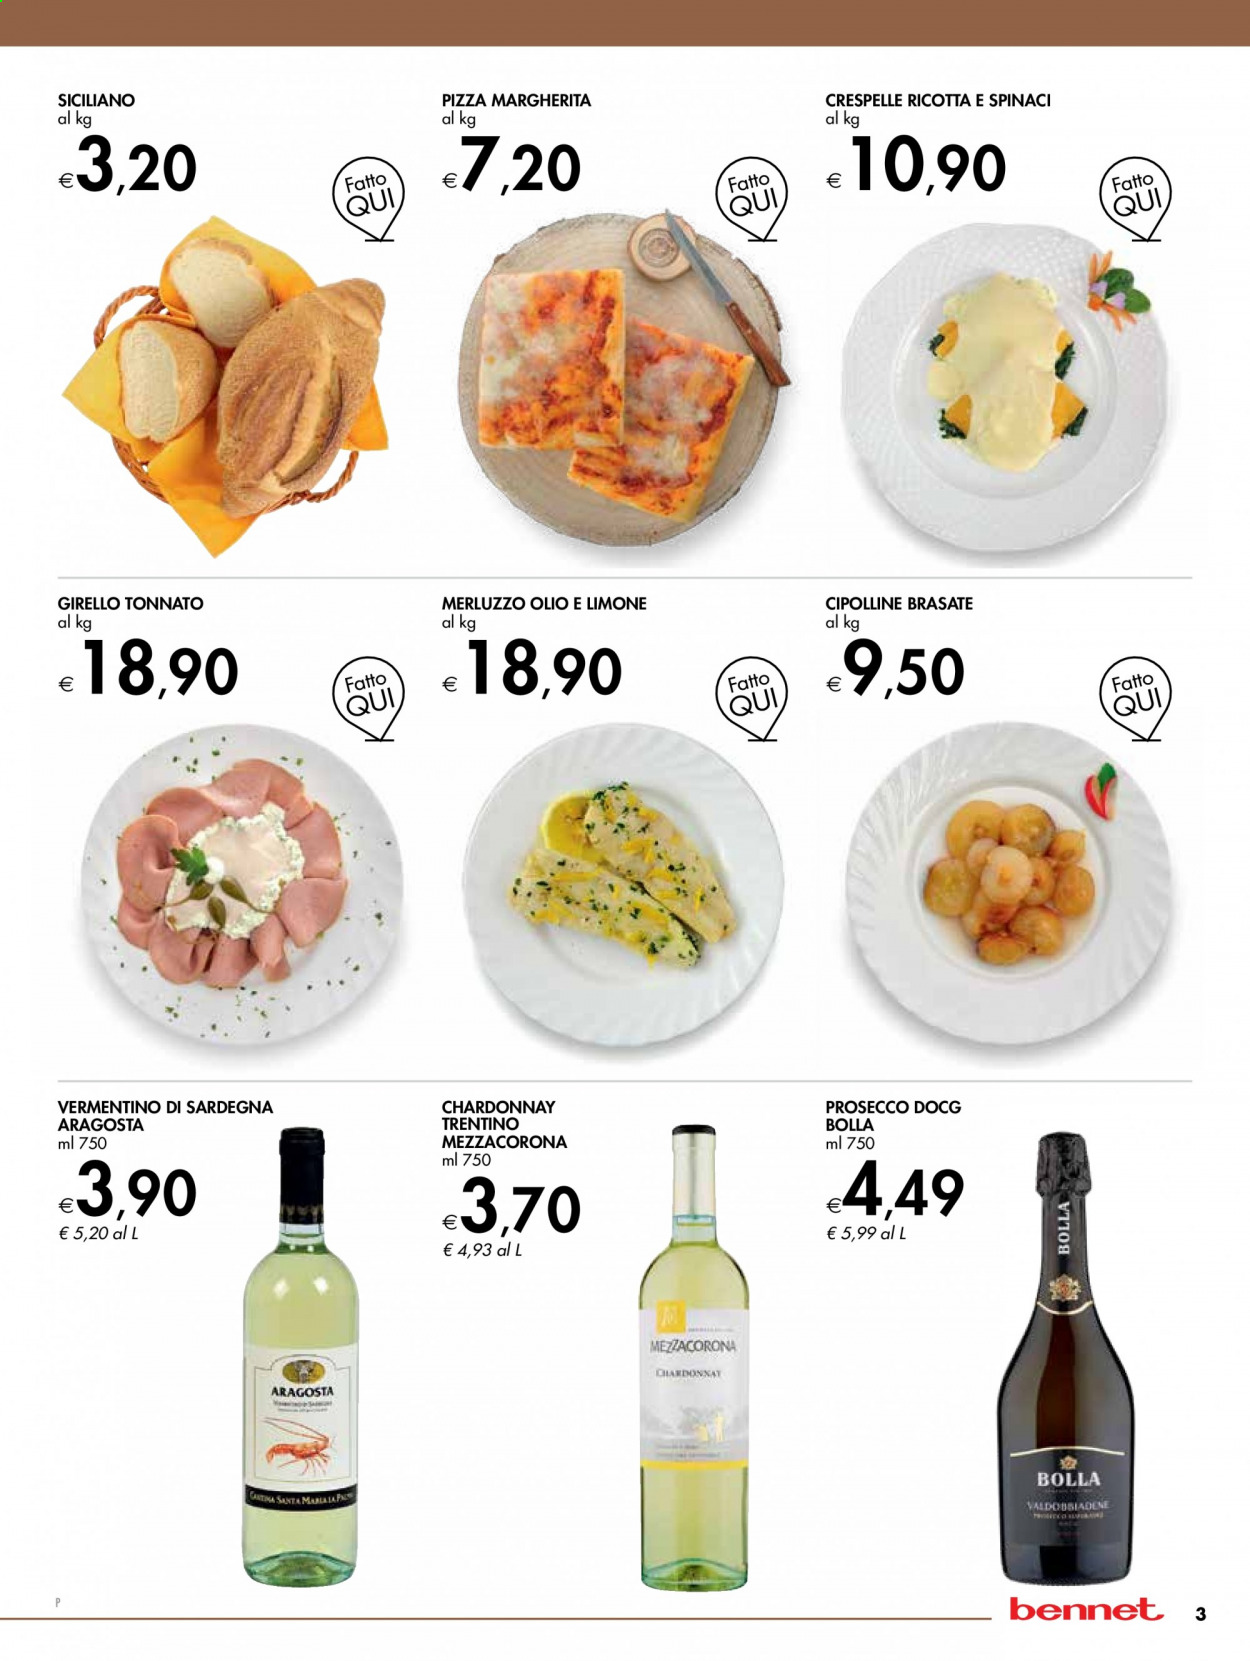 thumbnail - Volantino bennet - 22/3/2021 - 5/4/2021 - Prodotti in offerta - girello, merluzzo, crespelle, pizza, pizza Margherita, vino bianco, Chardonnay, Prosecco, vino, Vermentino. Pagina 3.